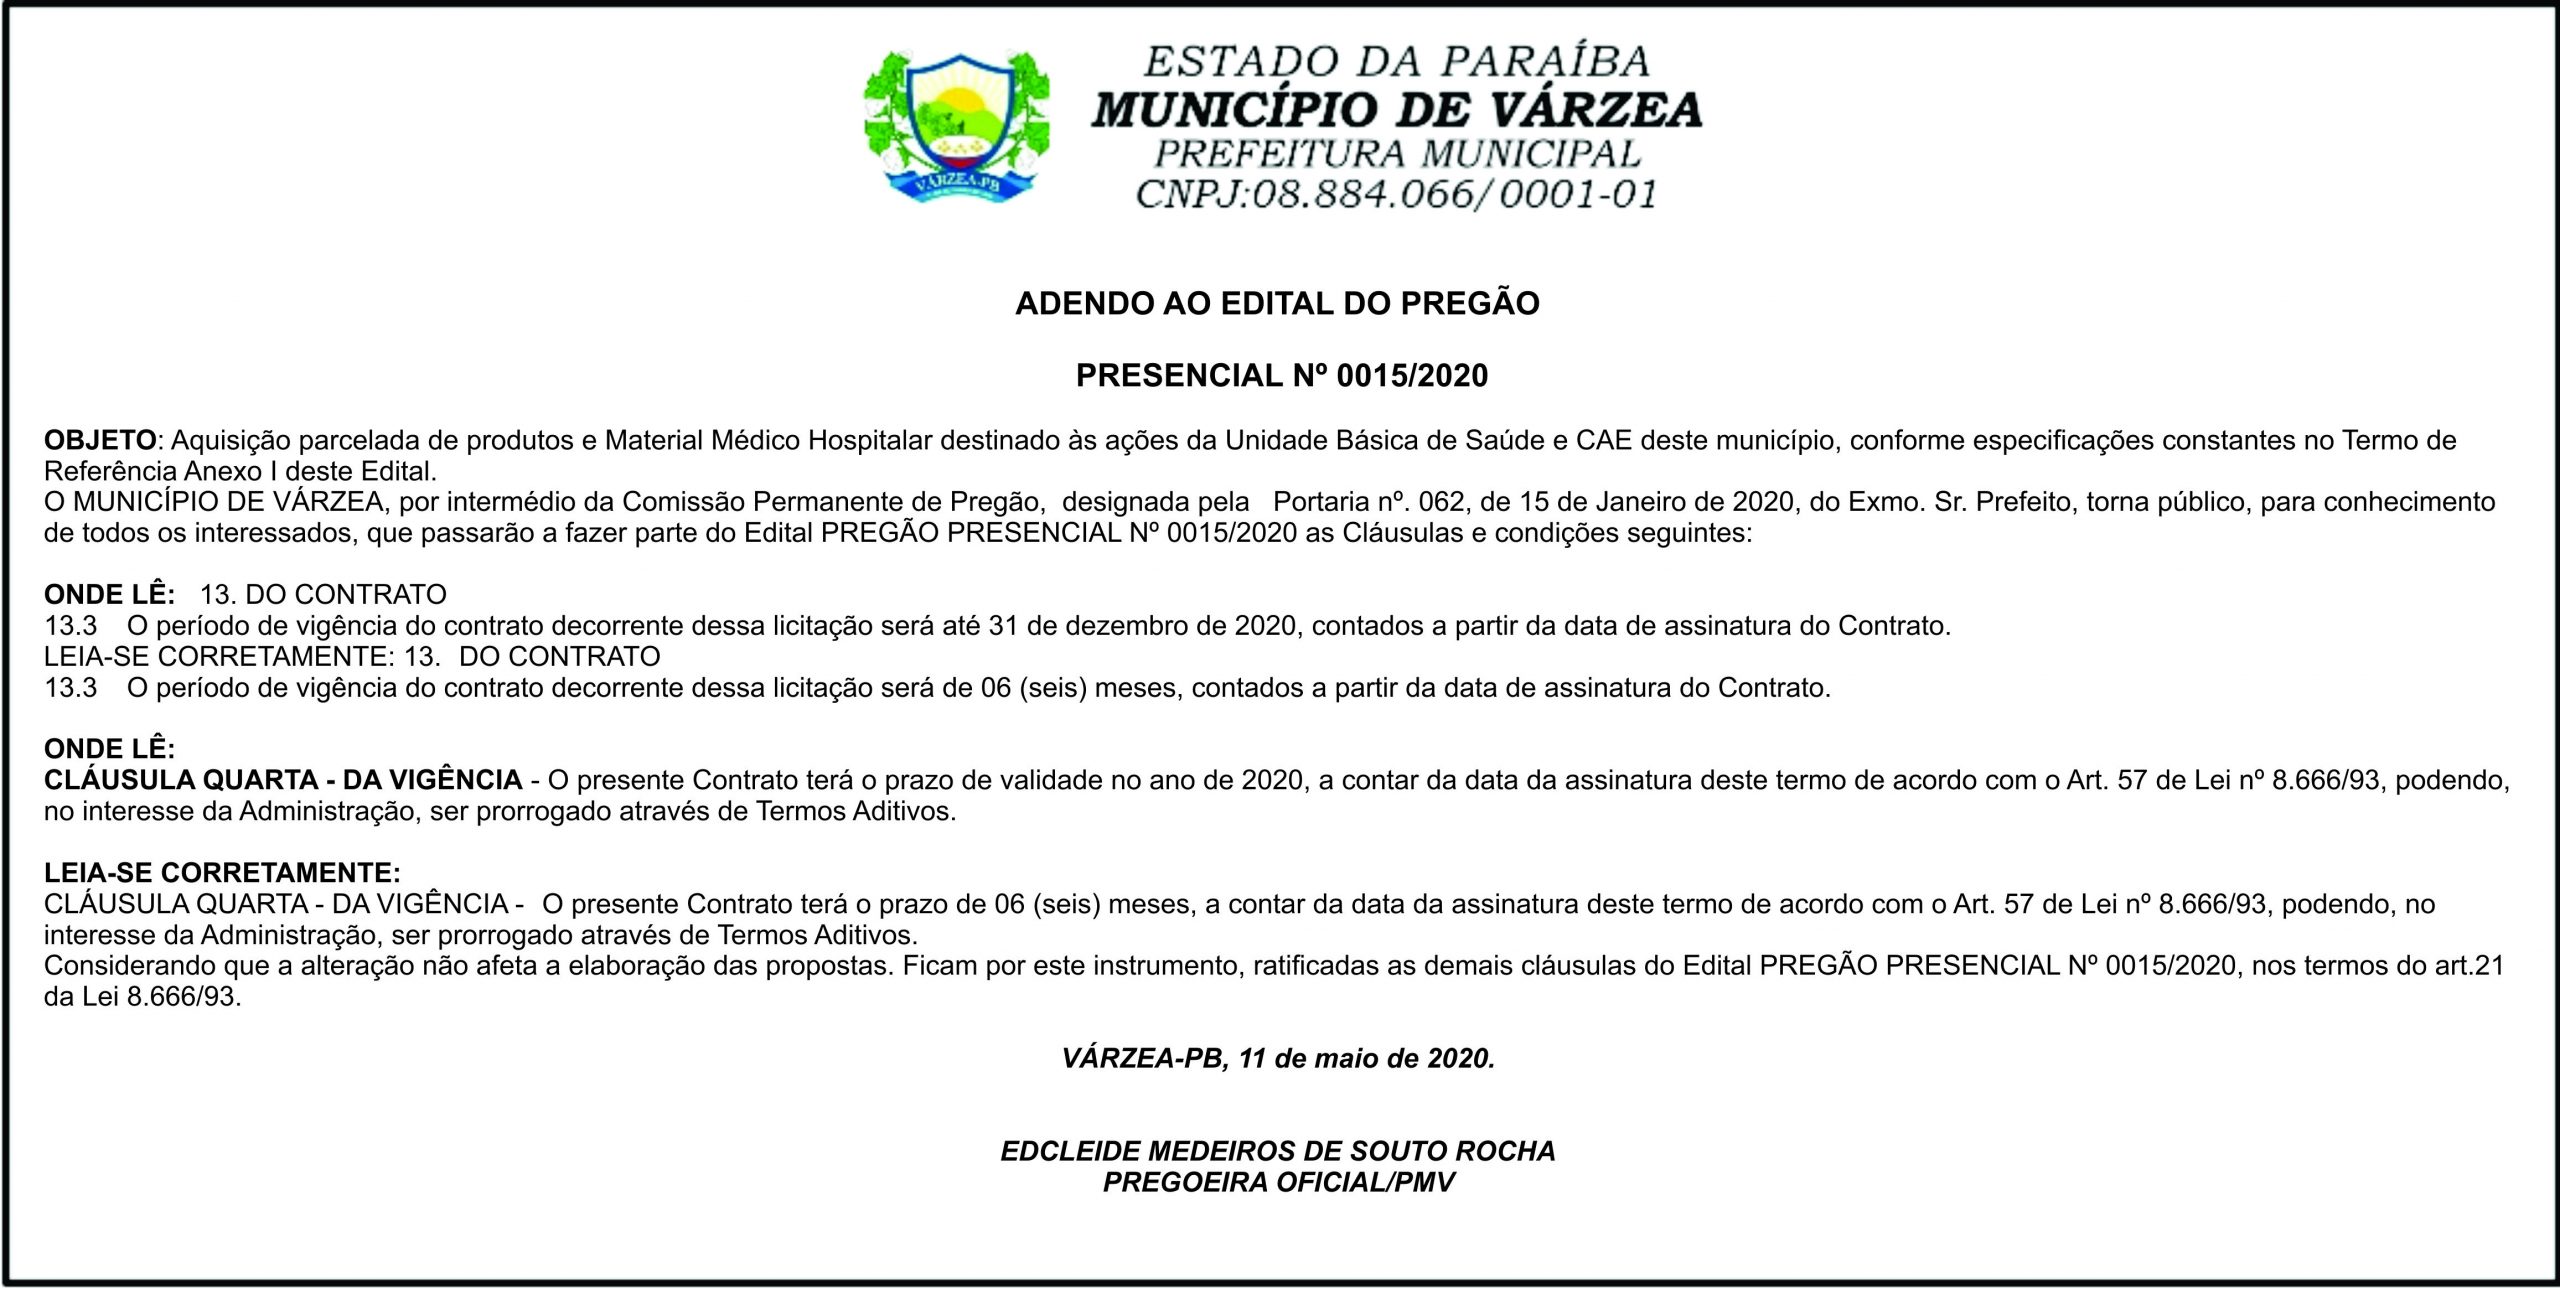 PREFEITURA MUNICIPAL DE VÁRZEA – ADENDO AO EDITAL DO PREGÃO PRESENCIAL Nº 0015/2020